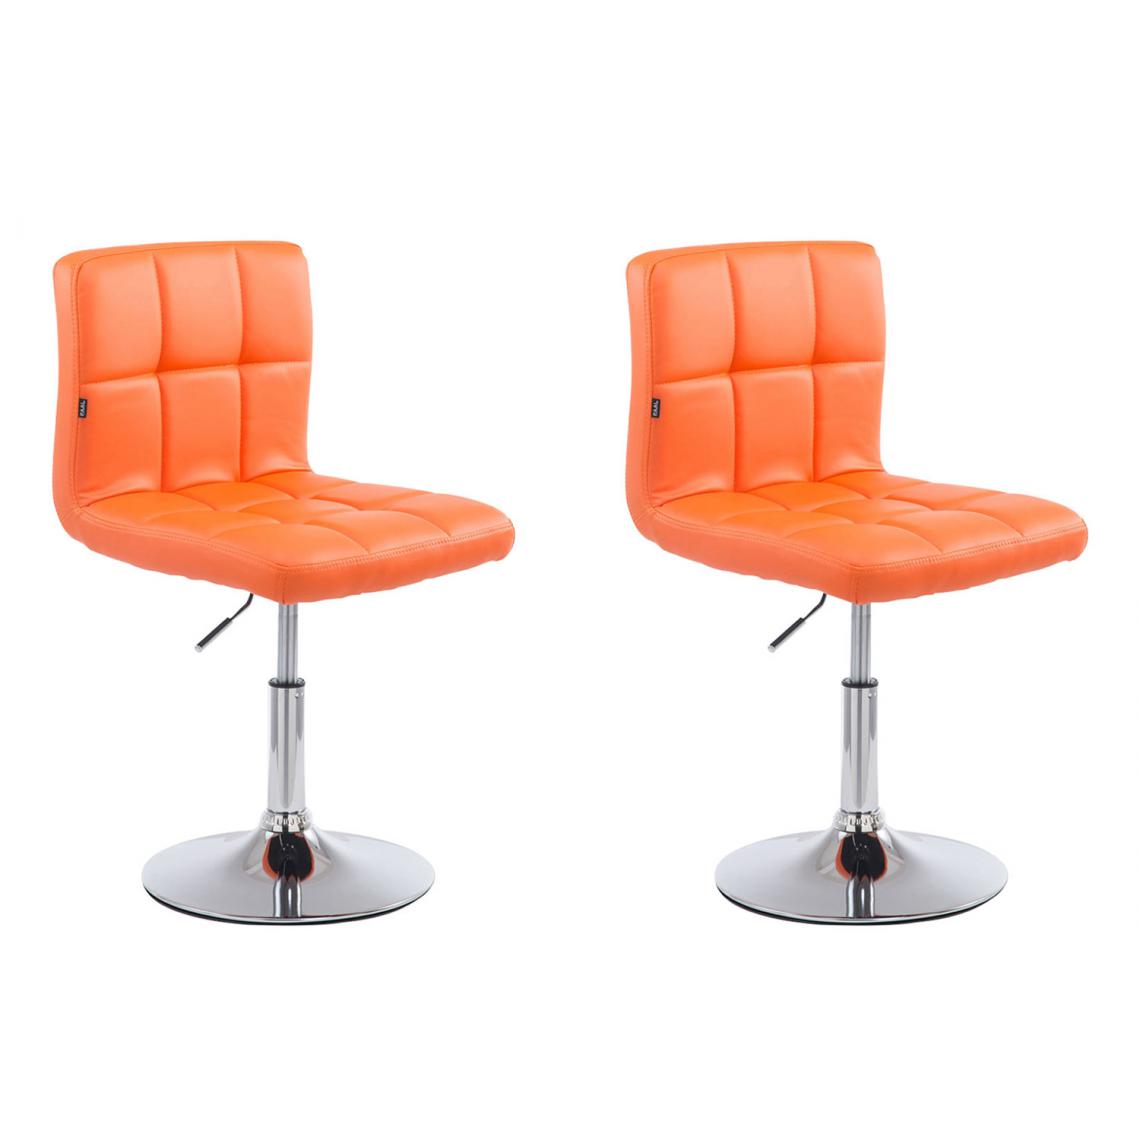 Icaverne - Esthetique Lot de 2 chaises longues selection Bamako V2 en cuir artificiel couleur Orange - Tabourets